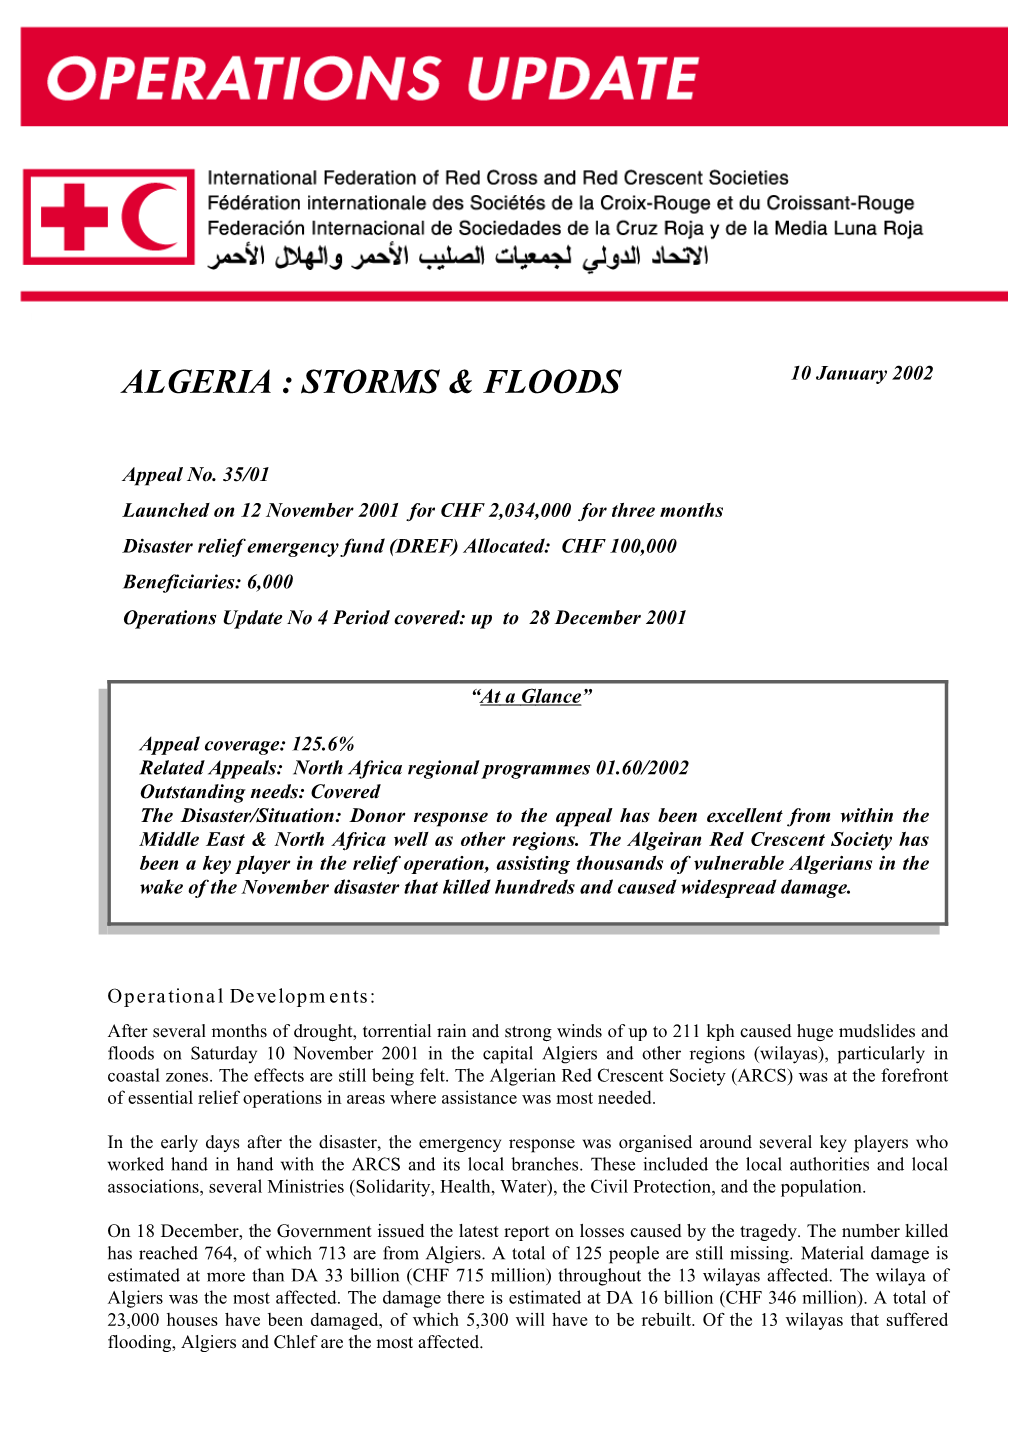 Algeria Storms & Floods